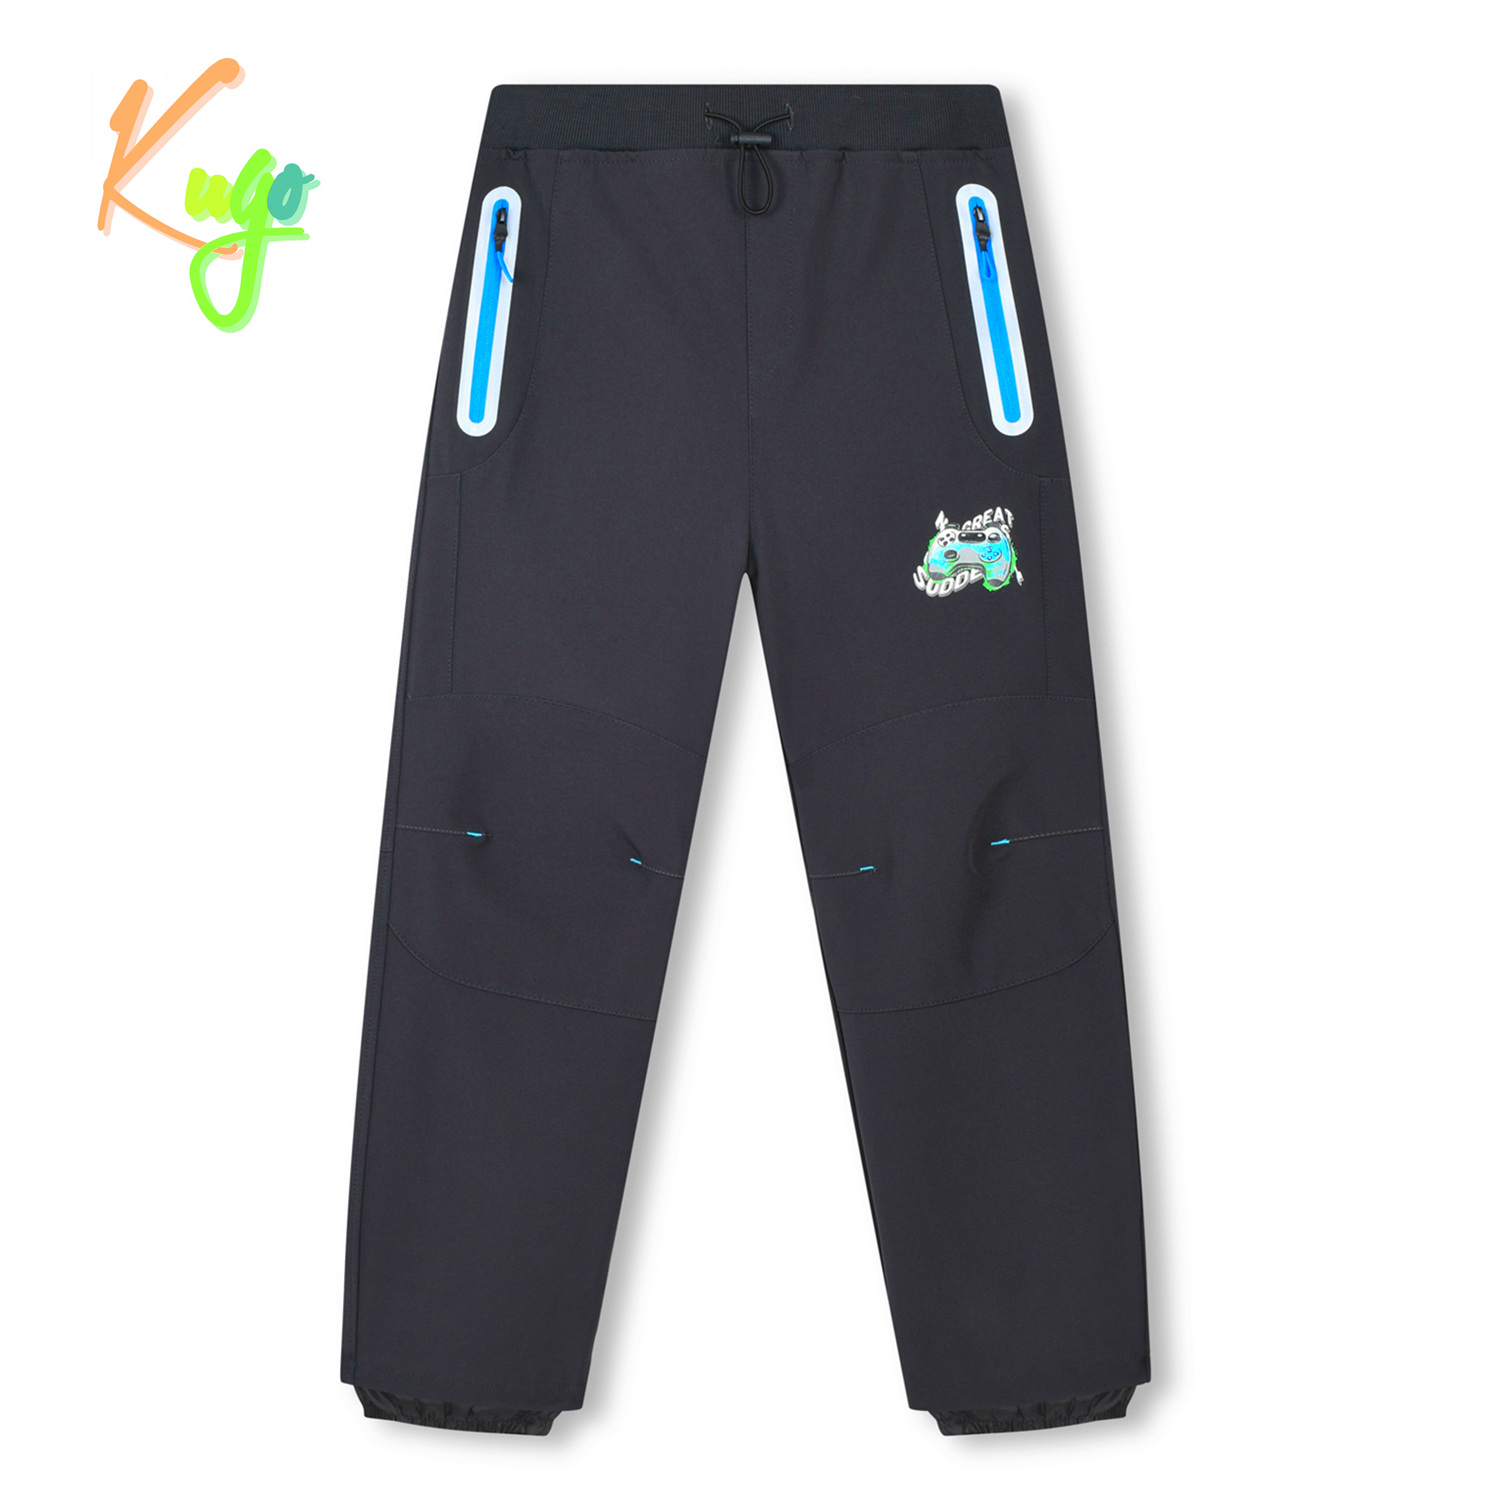 Chlapecké softshellové kalhoty - KUGO HK3118, šedá / modré zipy Barva: Šedá, Velikost: 146